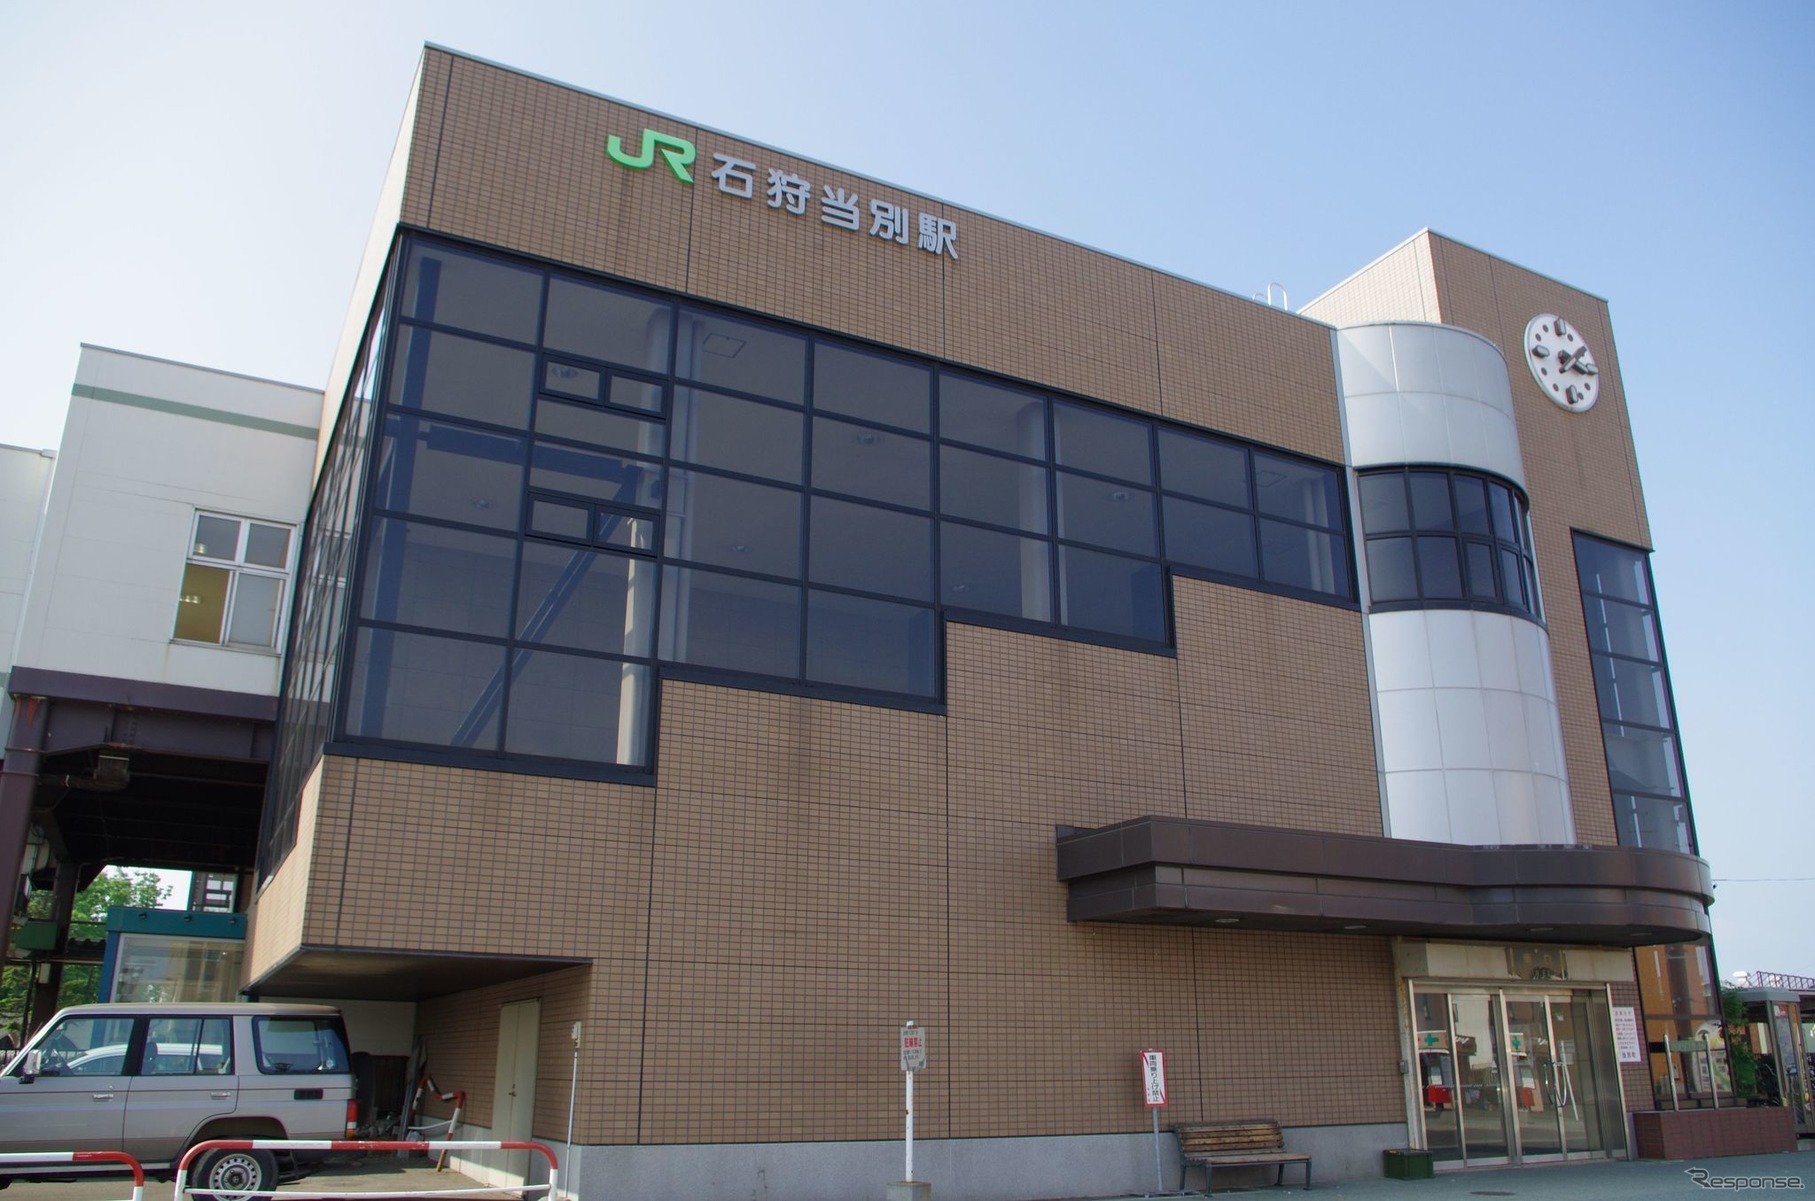 「当別」に改称される札沼線石狩当別駅。2011年6月19日。